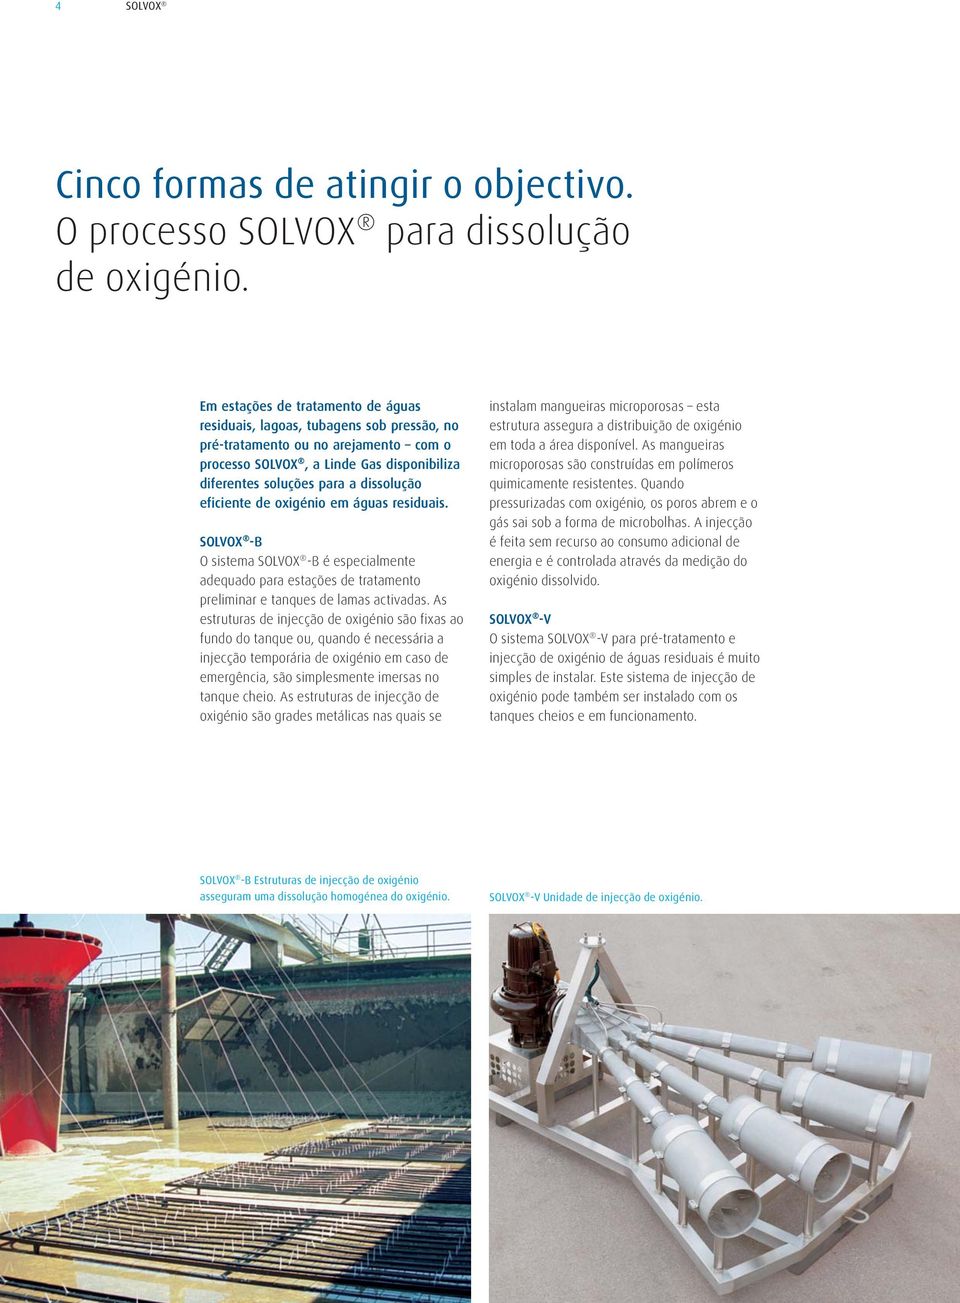 eficiente de oxigénio em águas residuais. SOLVOX -B O sistema SOLVOX -B é especialmente adequado para estações de tratamento preliminar e tanques de lamas activadas.